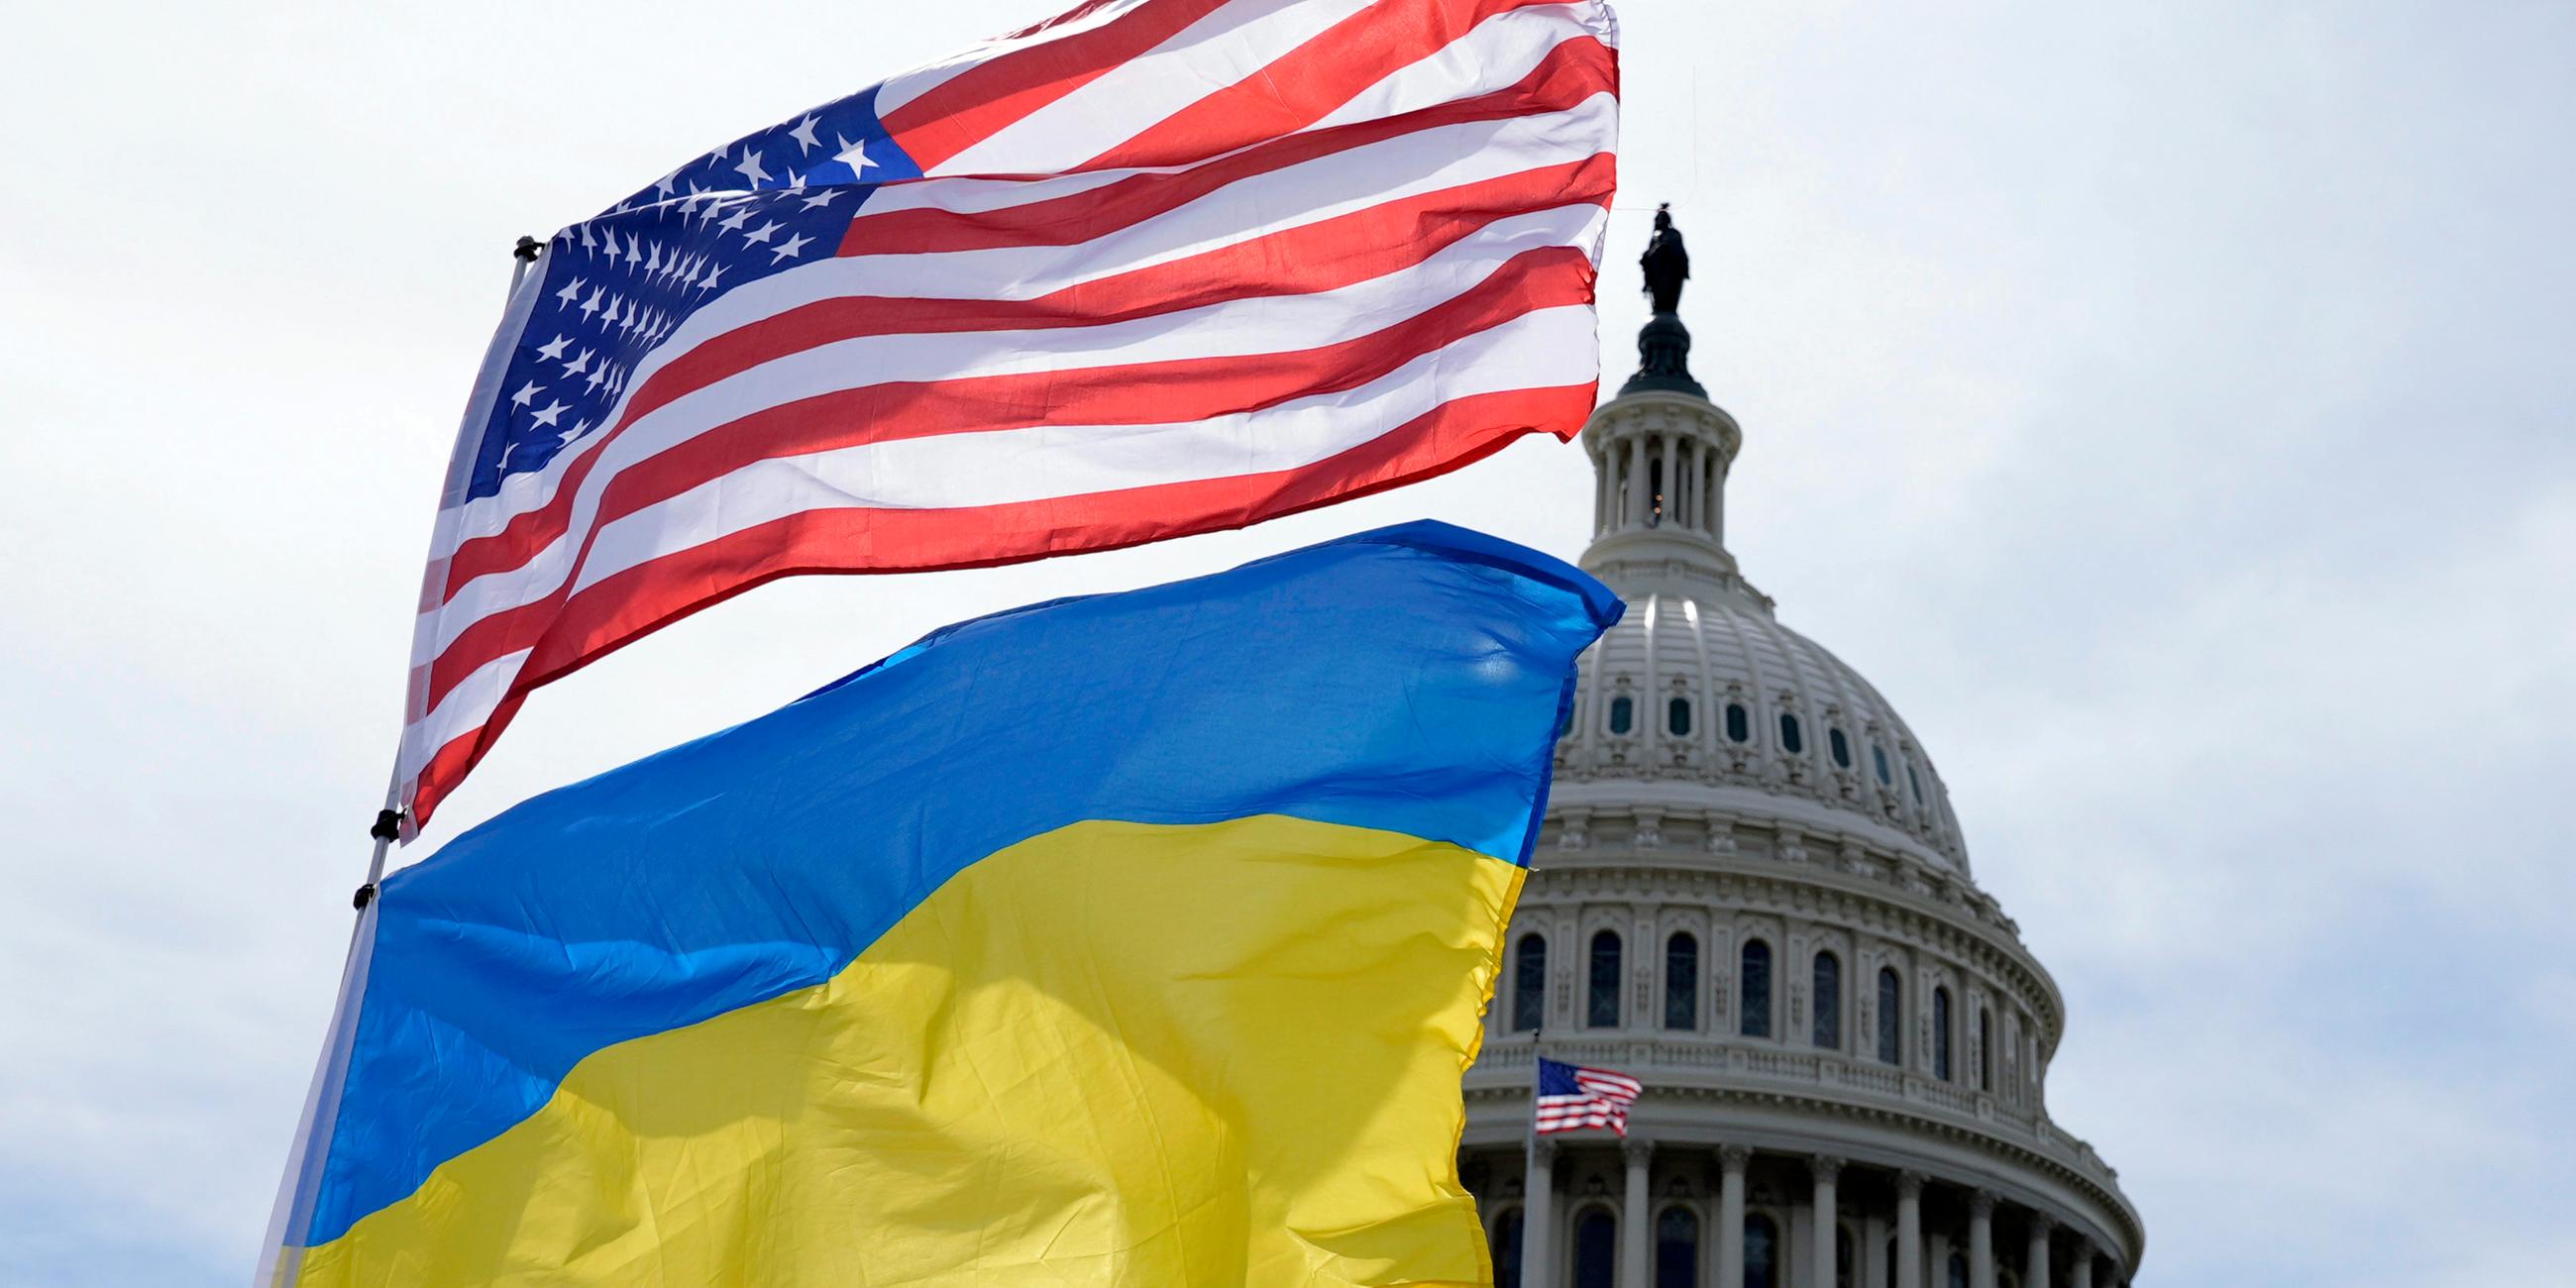  USA, Washington: Die US-amerikanische und die ukrainische Flagge wehen vor dem Kapitol in Washington im Wind.